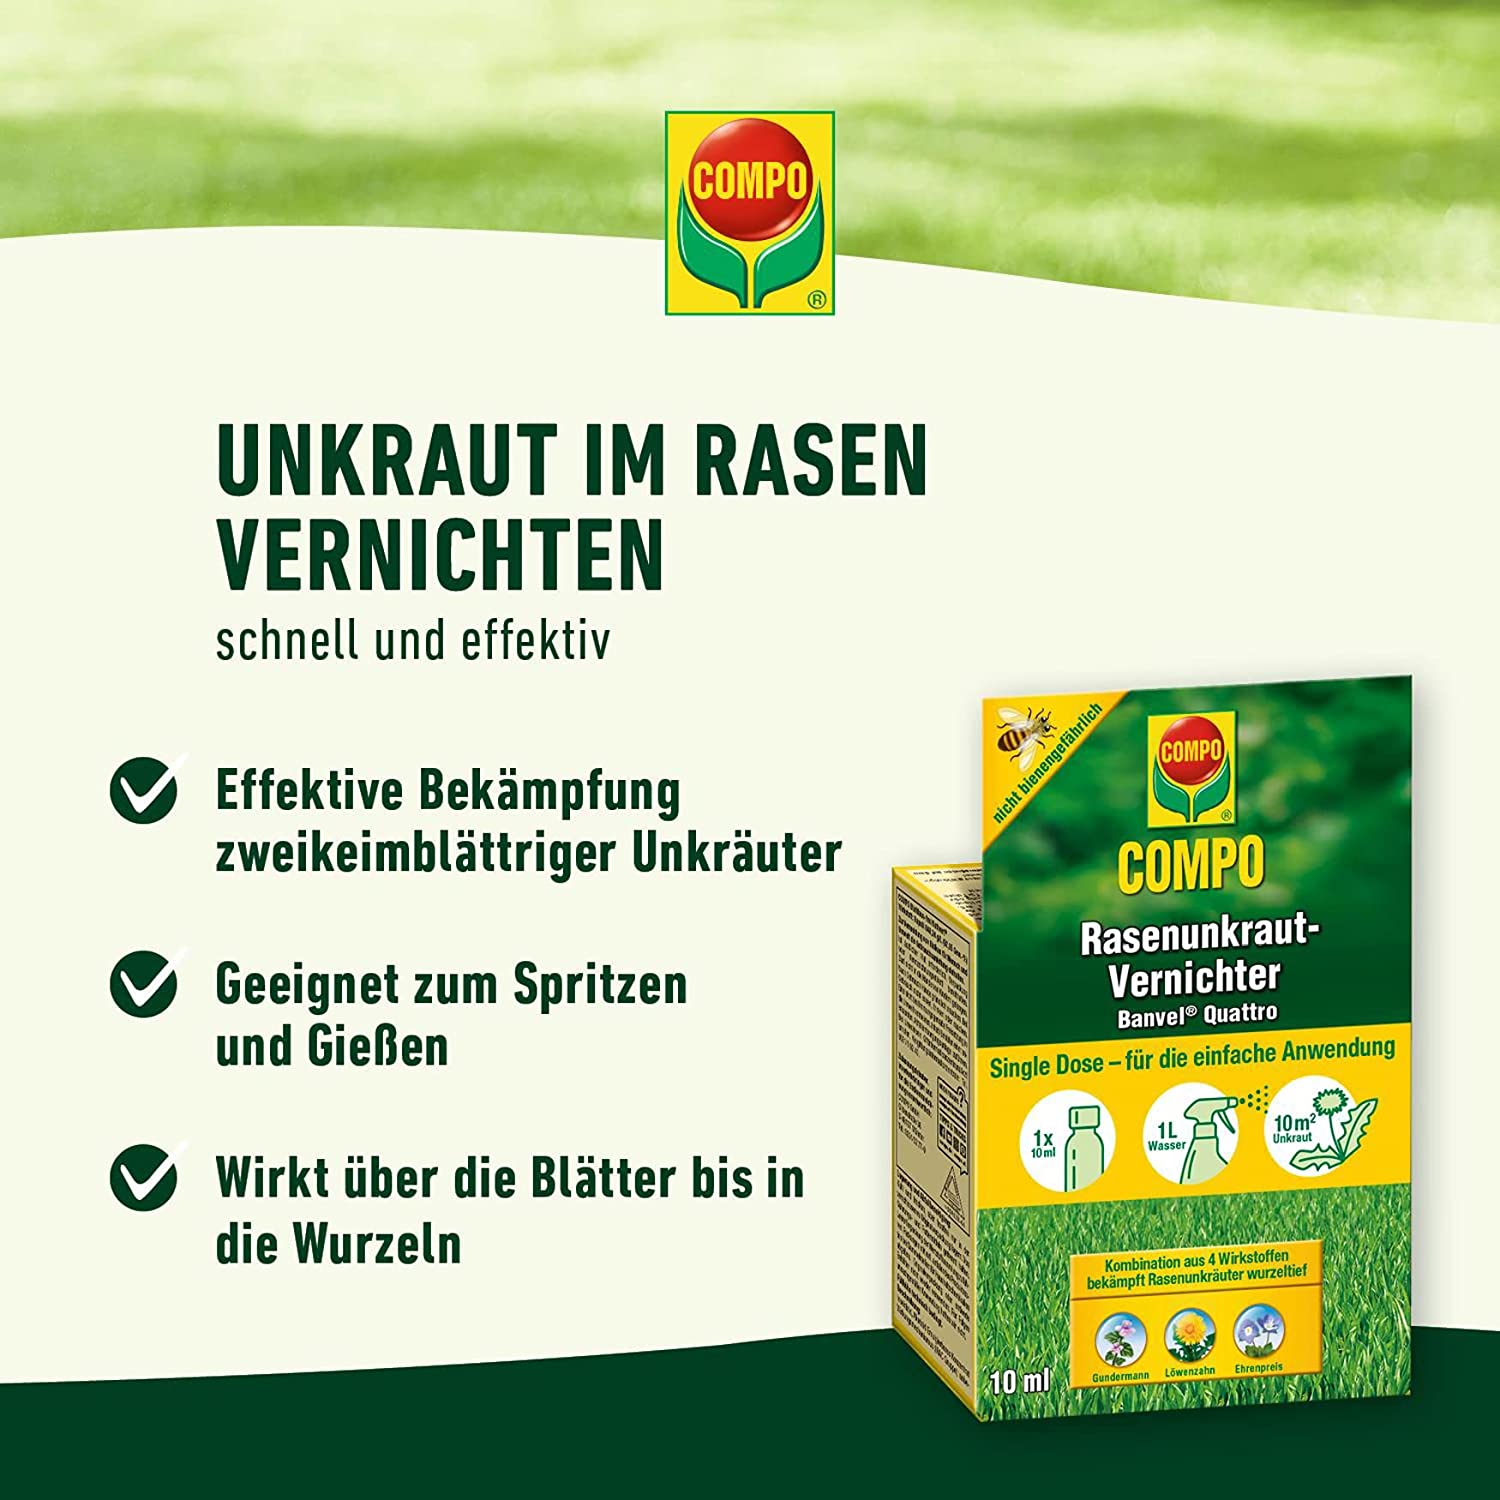 COMPO Rasenunkraut-Vernichter Banvel® Quattro 10 ml für 10 m²